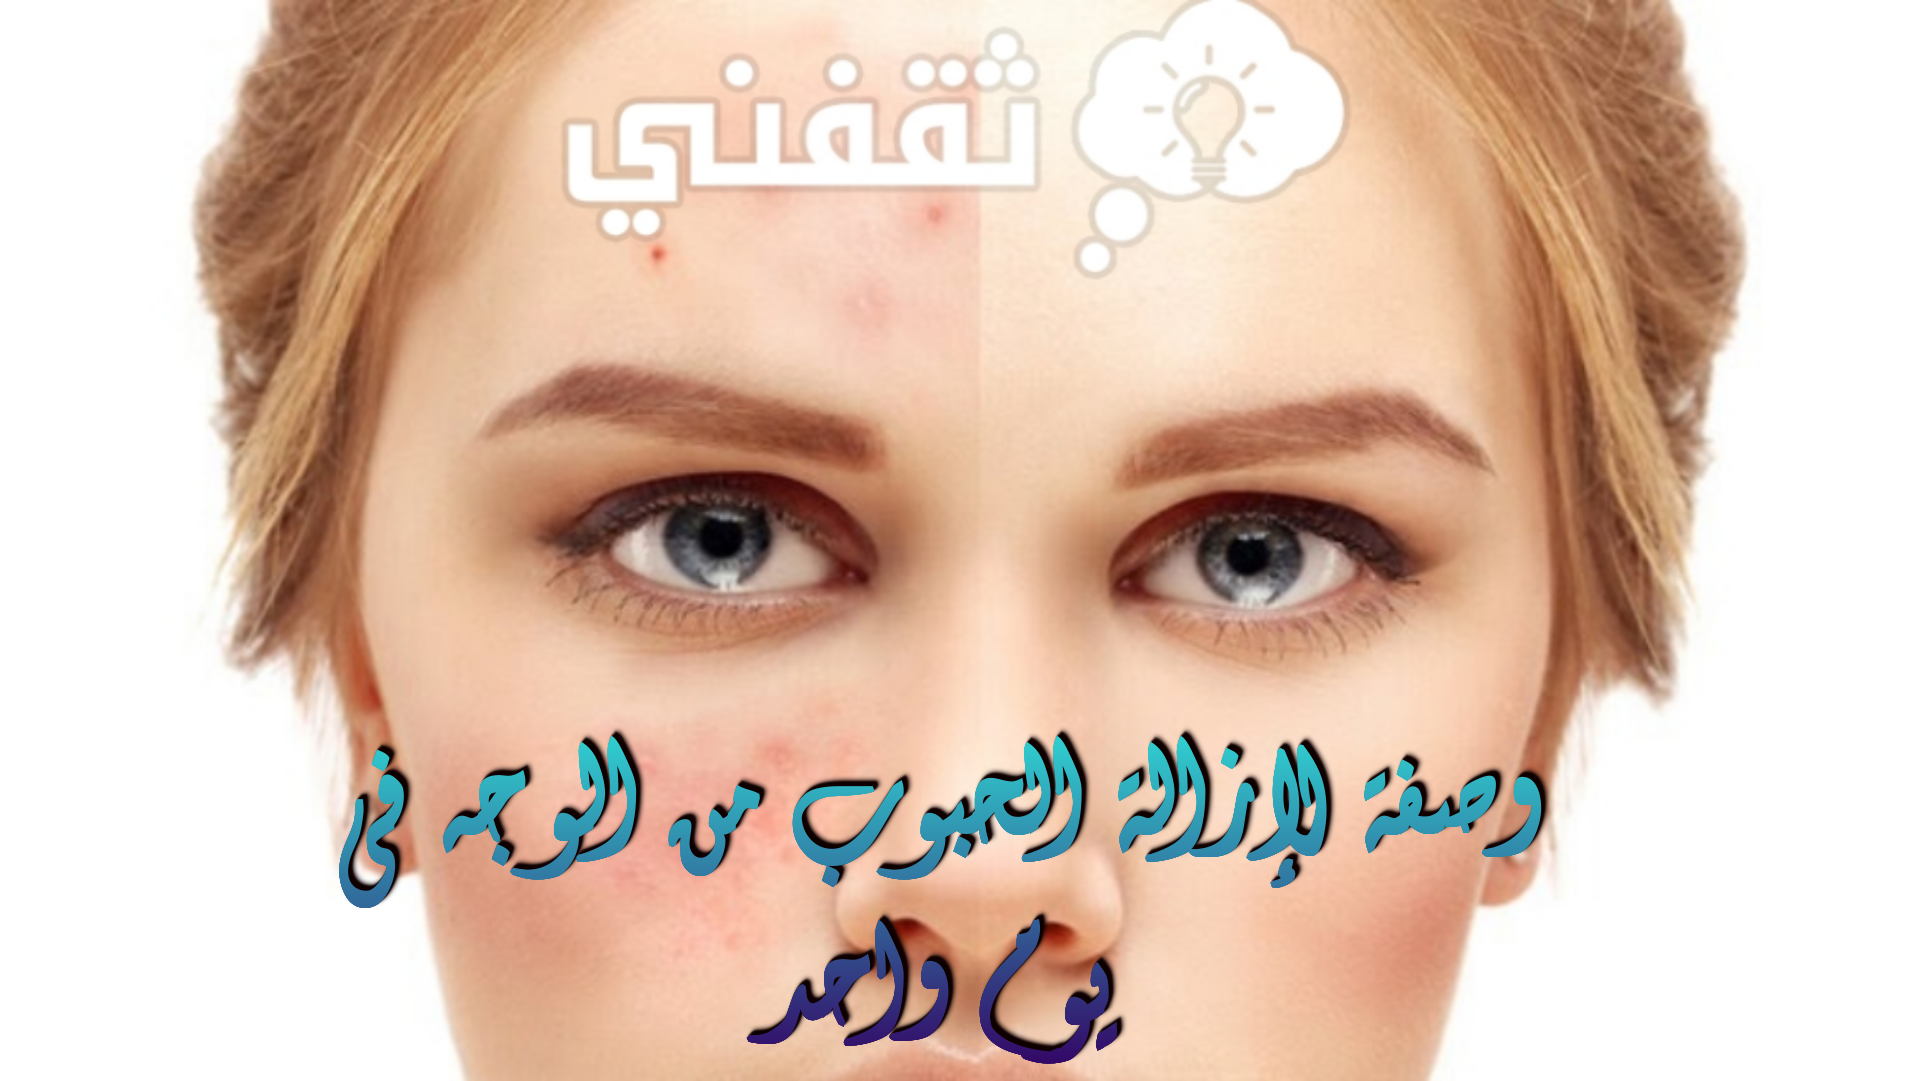 وصفة لإزالة الحبوب من الوجه في يوم واحد وماسك لتفتيح لون البشرة في أسبوع